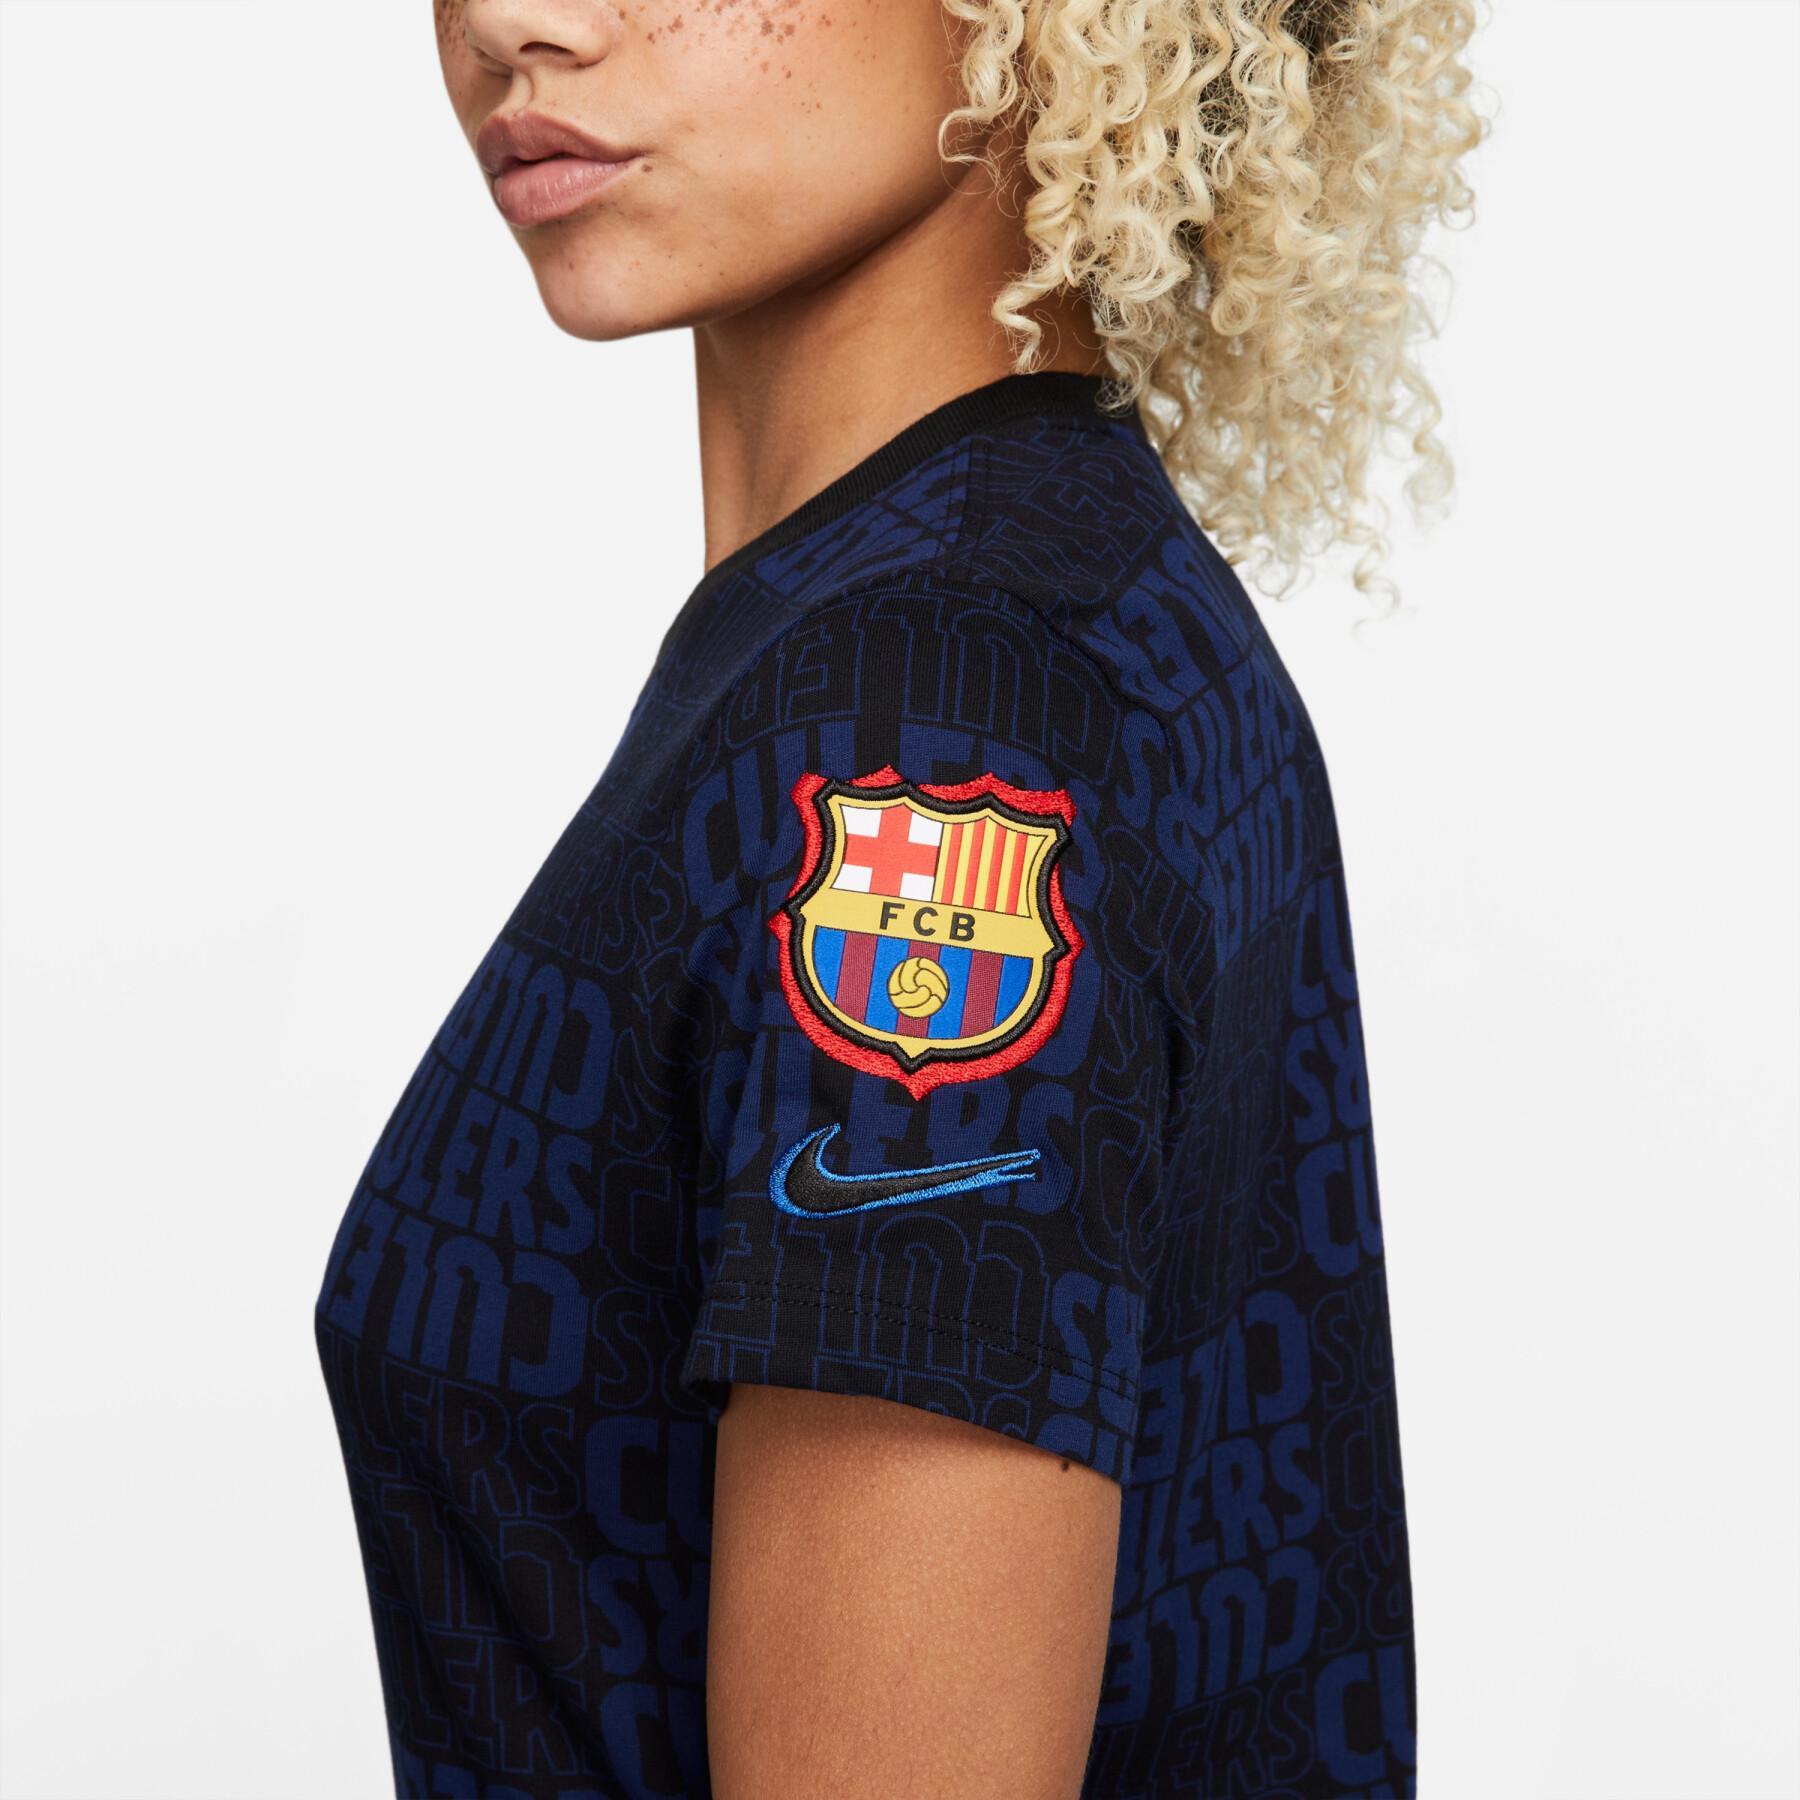 Women's T-shirt FC barcelone 2021/22